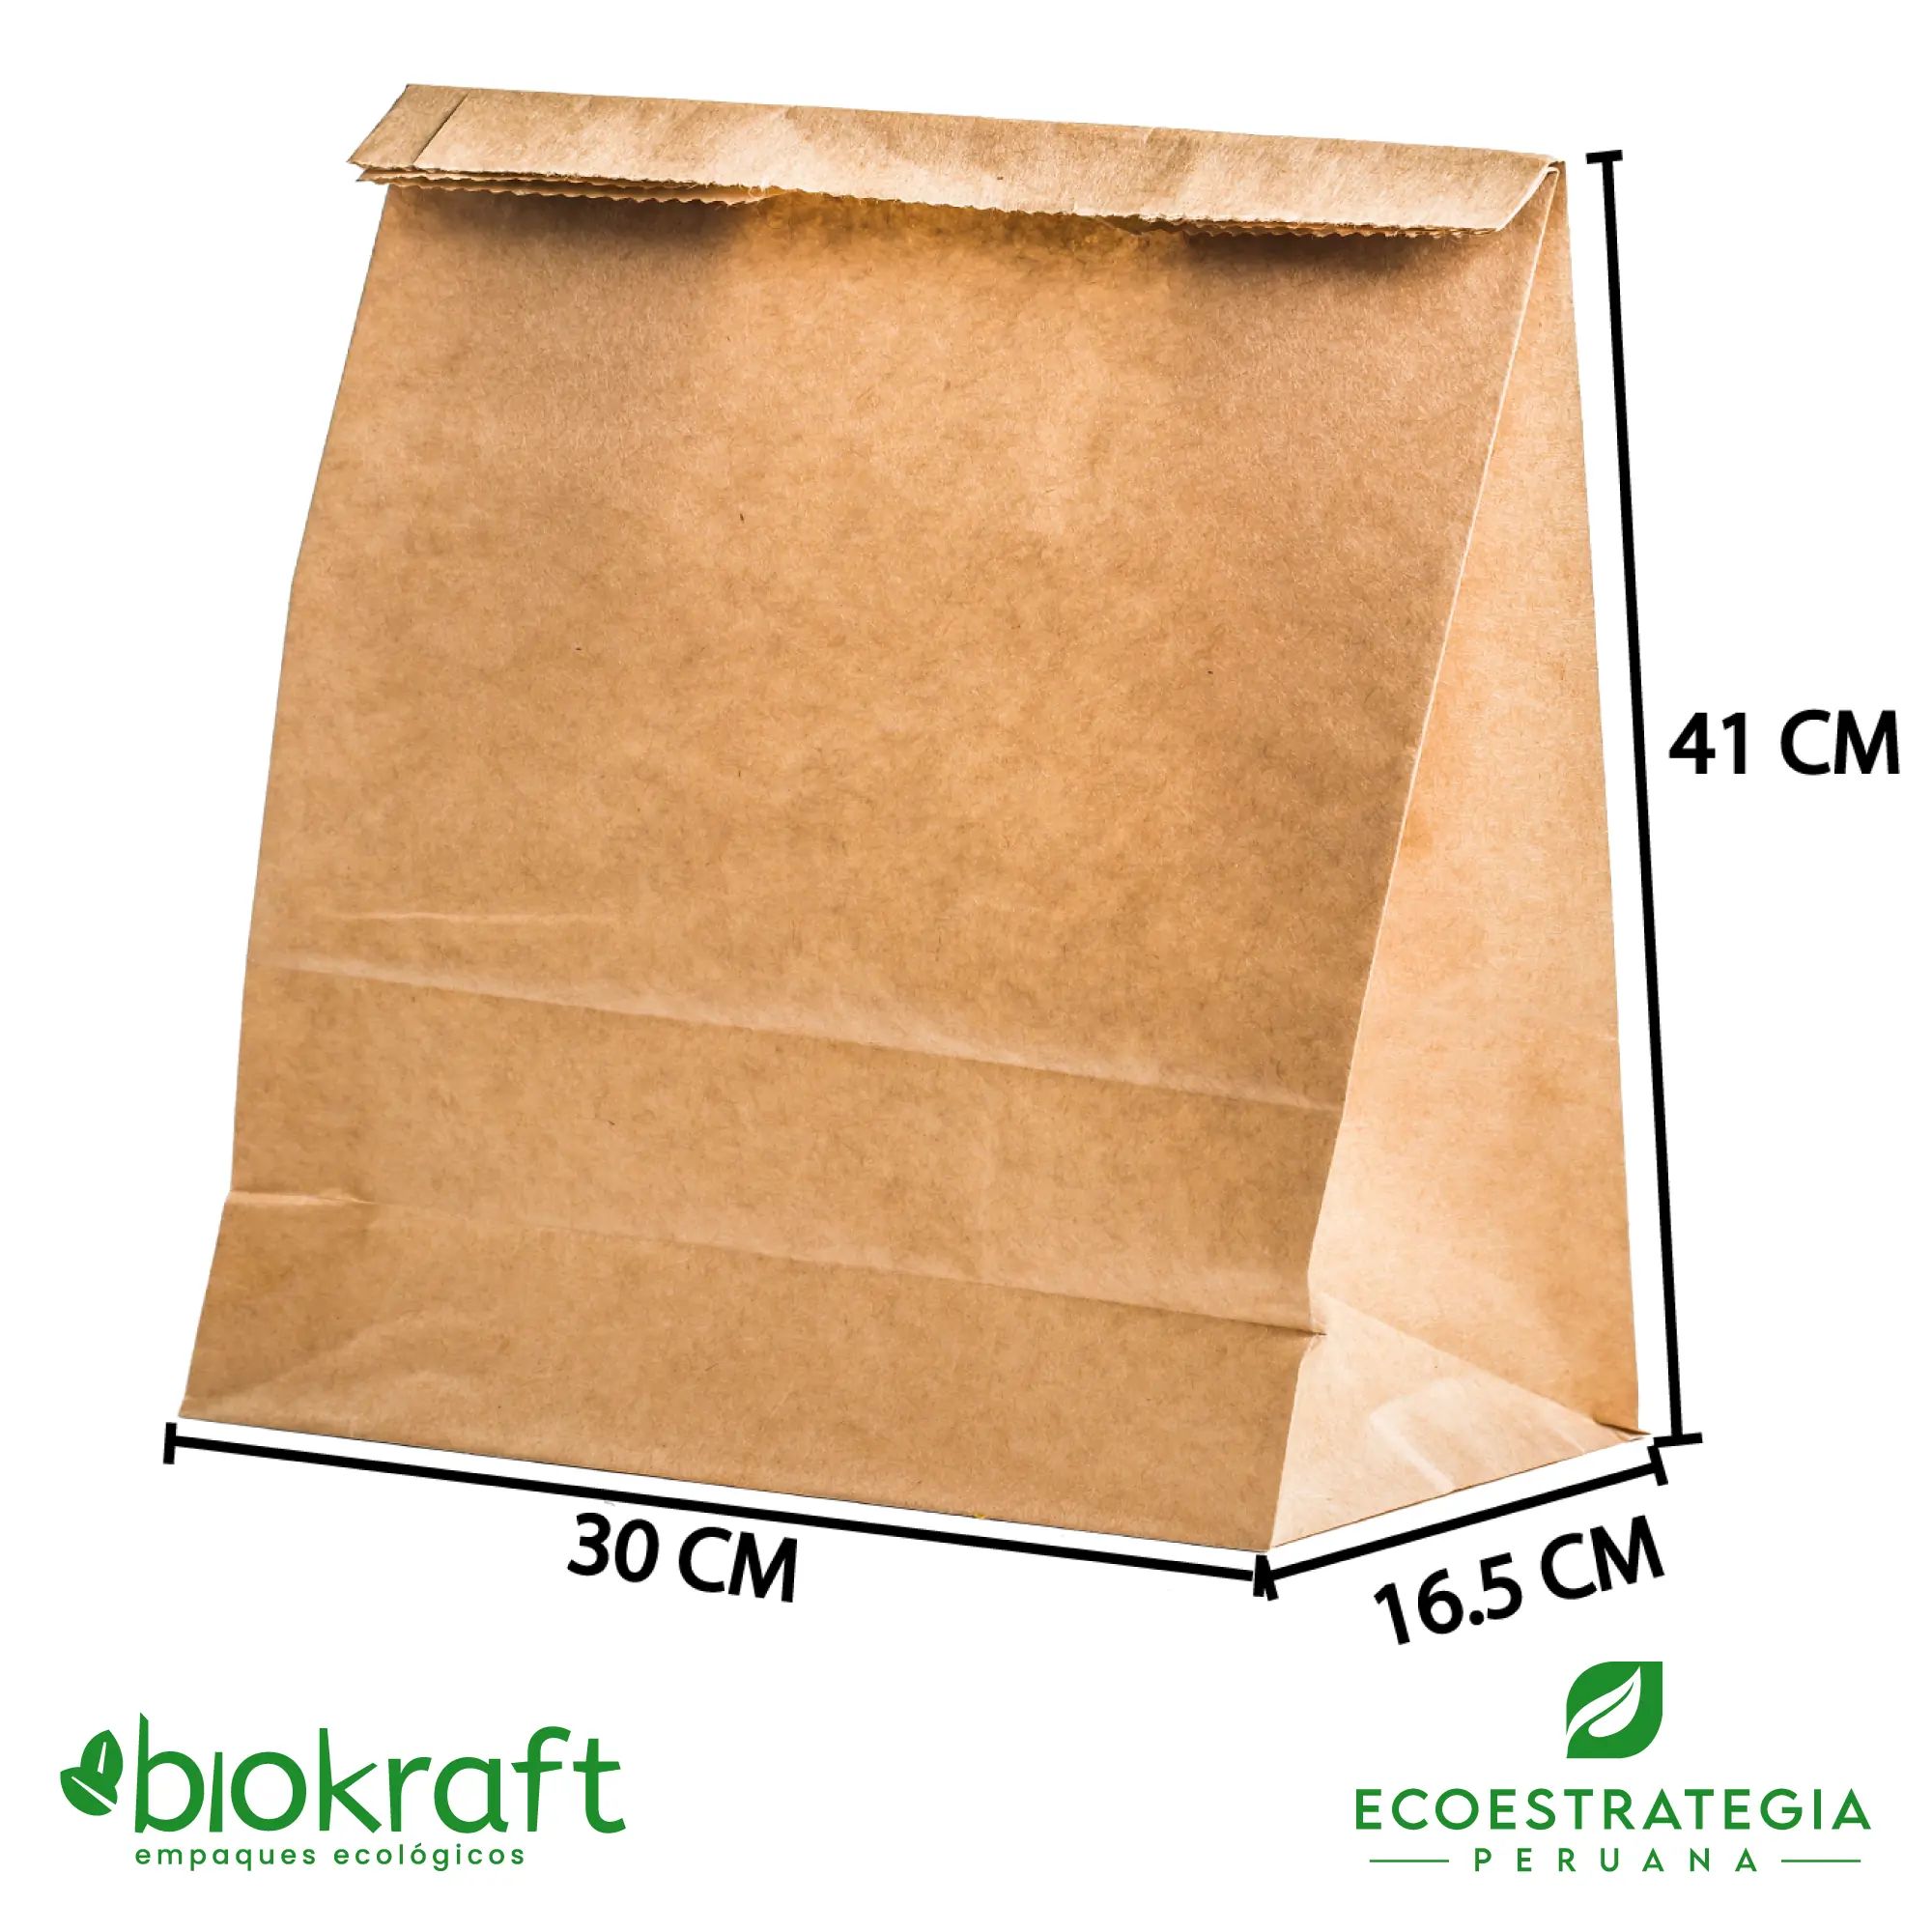 Esta bolsa de papel Kraft tiene un grosor de 80 gr y un peso de 61gr. Bolsa biodegradable de excelente gramaje y medida, ideal para comidas y productos ligeros. Cotiza ahora tus bolsas Kraft brasa larga